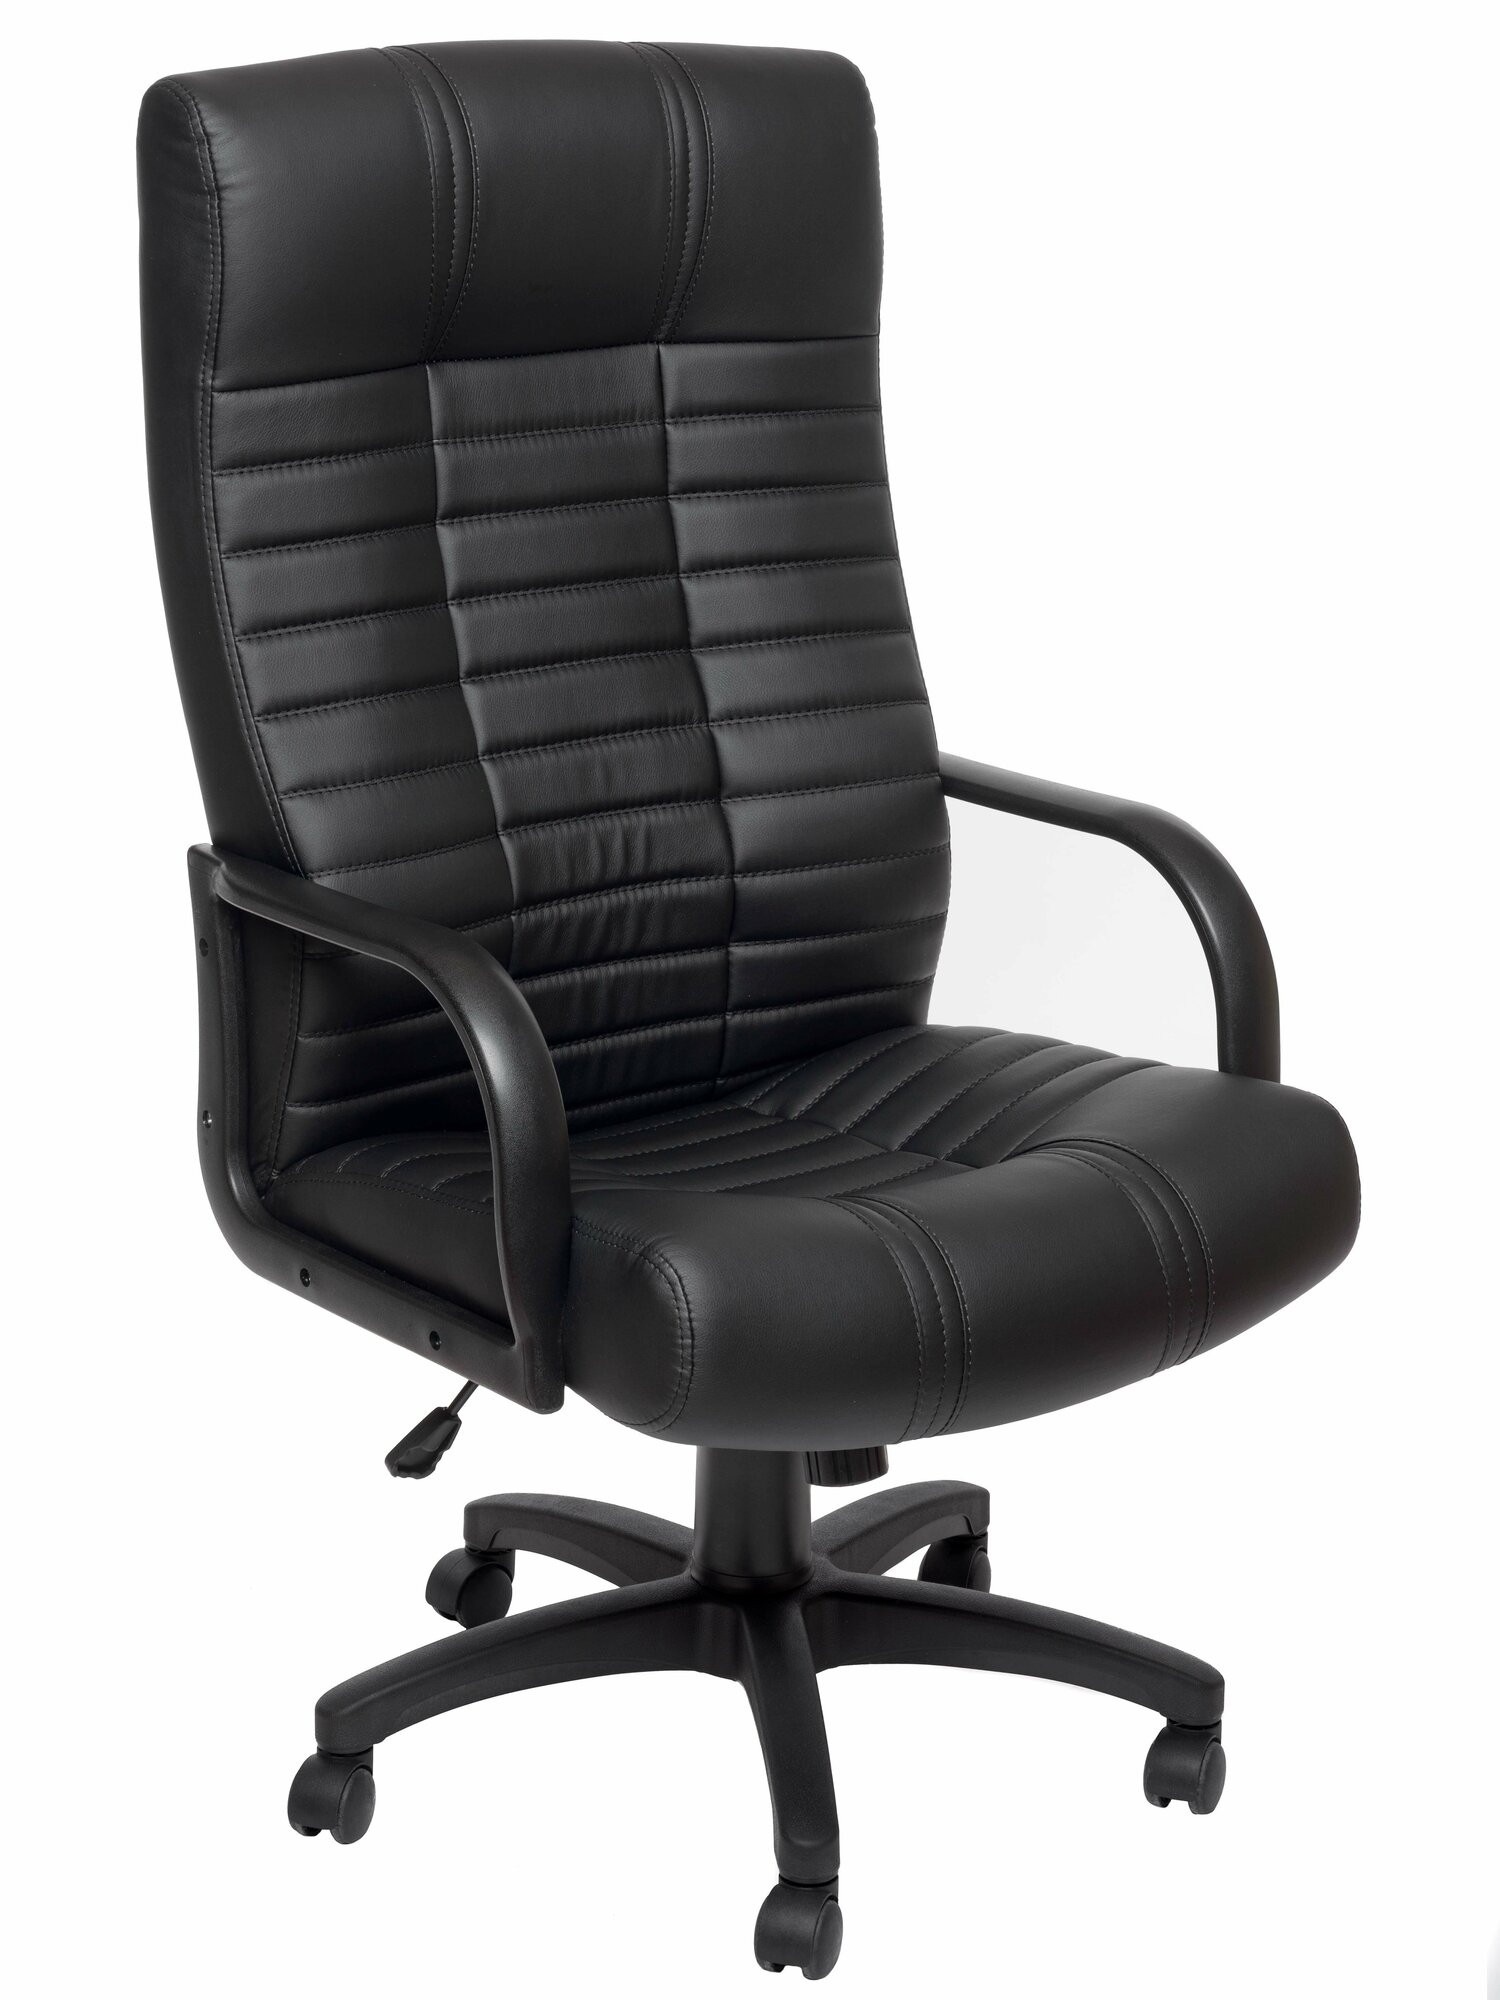 Компьютерное офисное кресло РосКресла Атлант-1 руководителя, обивка: искусственная кожа, цвет: черный